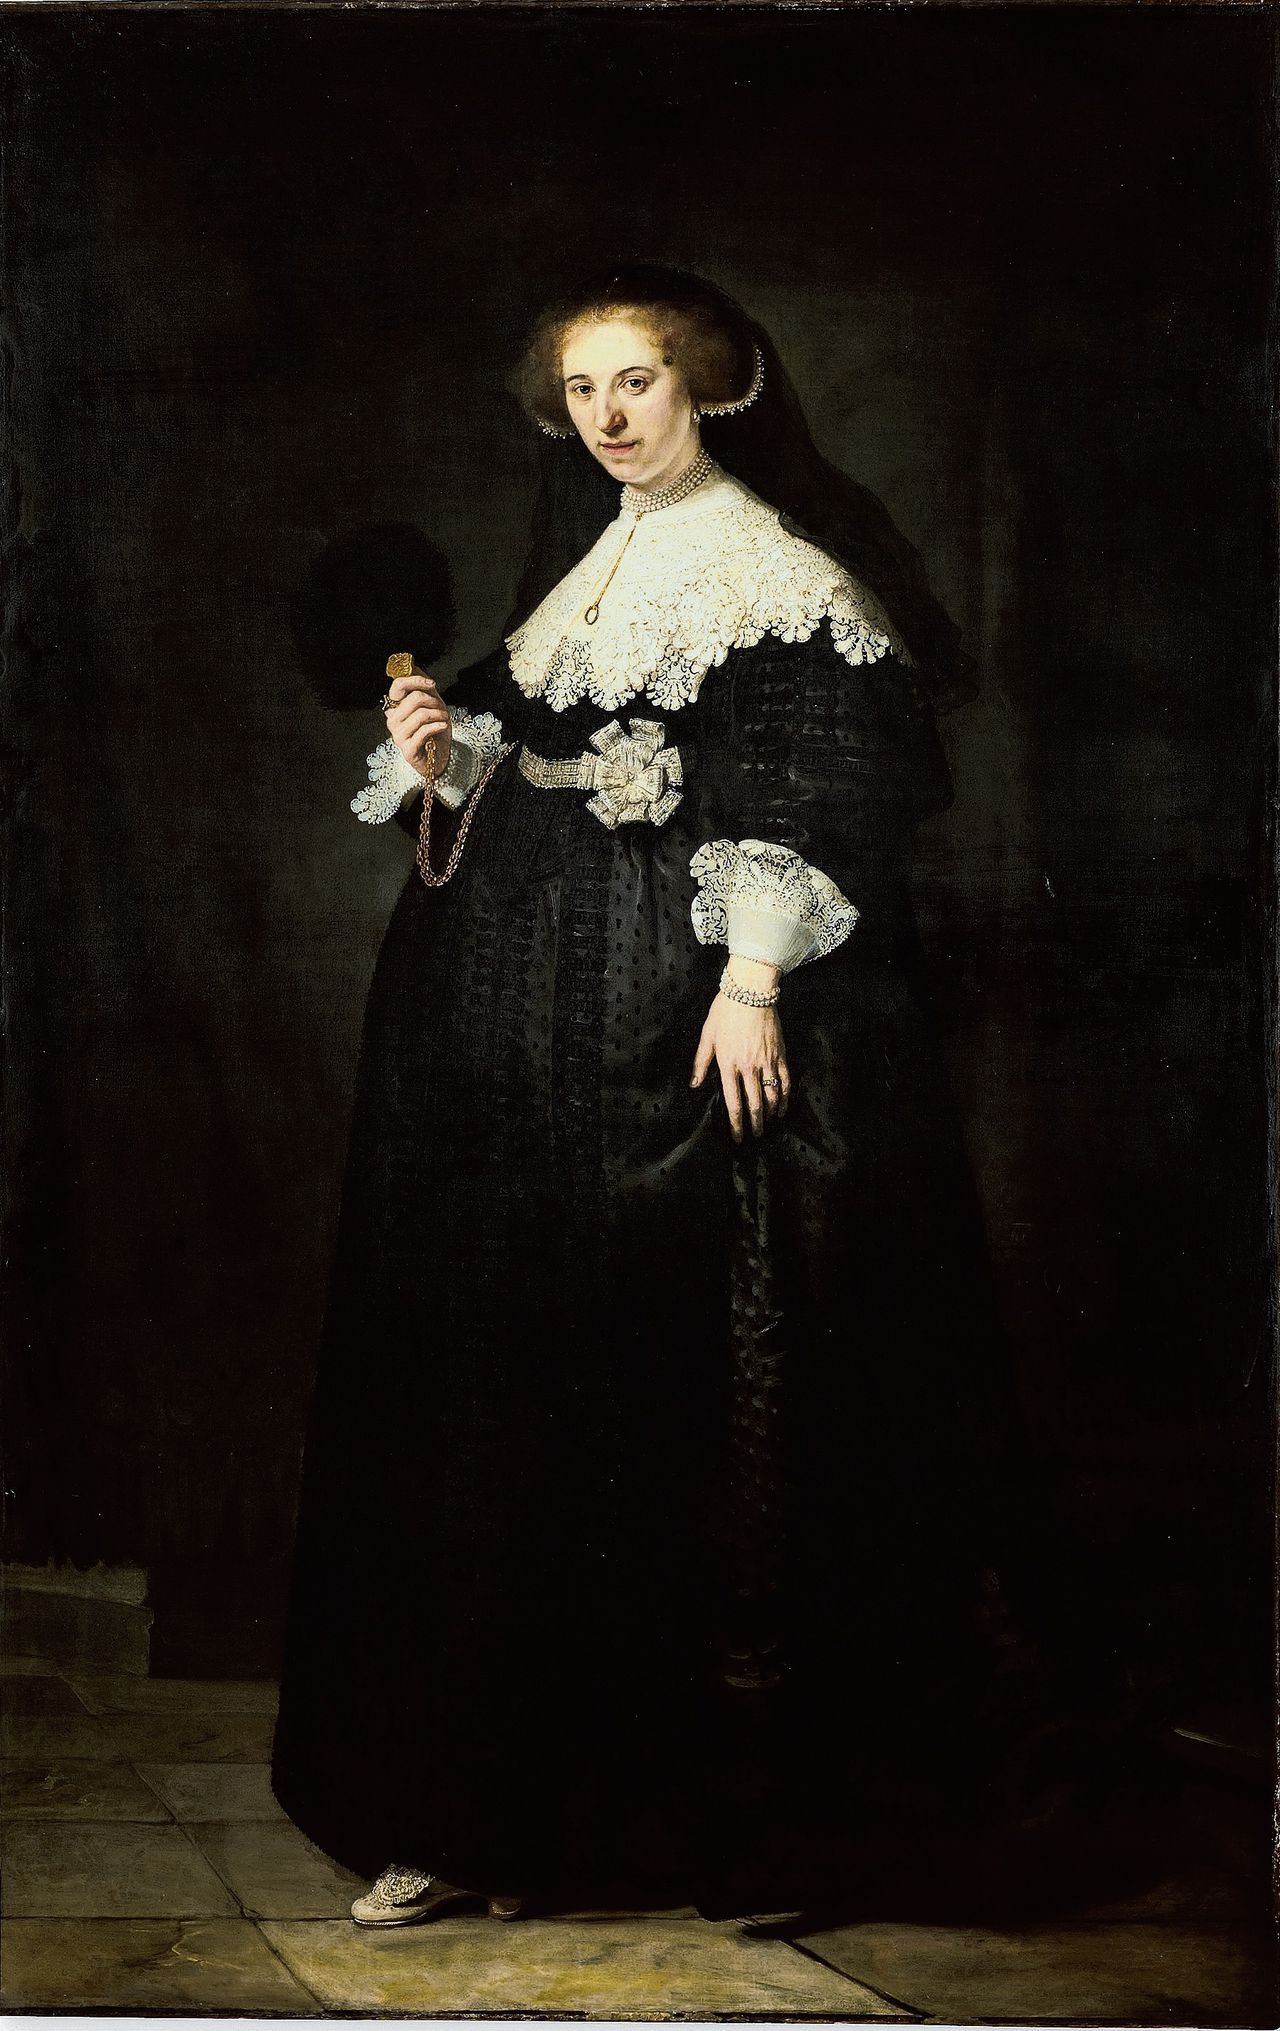 De onderhandelingen over de aankoop van de Rembrandt-portretten Marten en Oopjen verliepen vooral via WhatsApp.